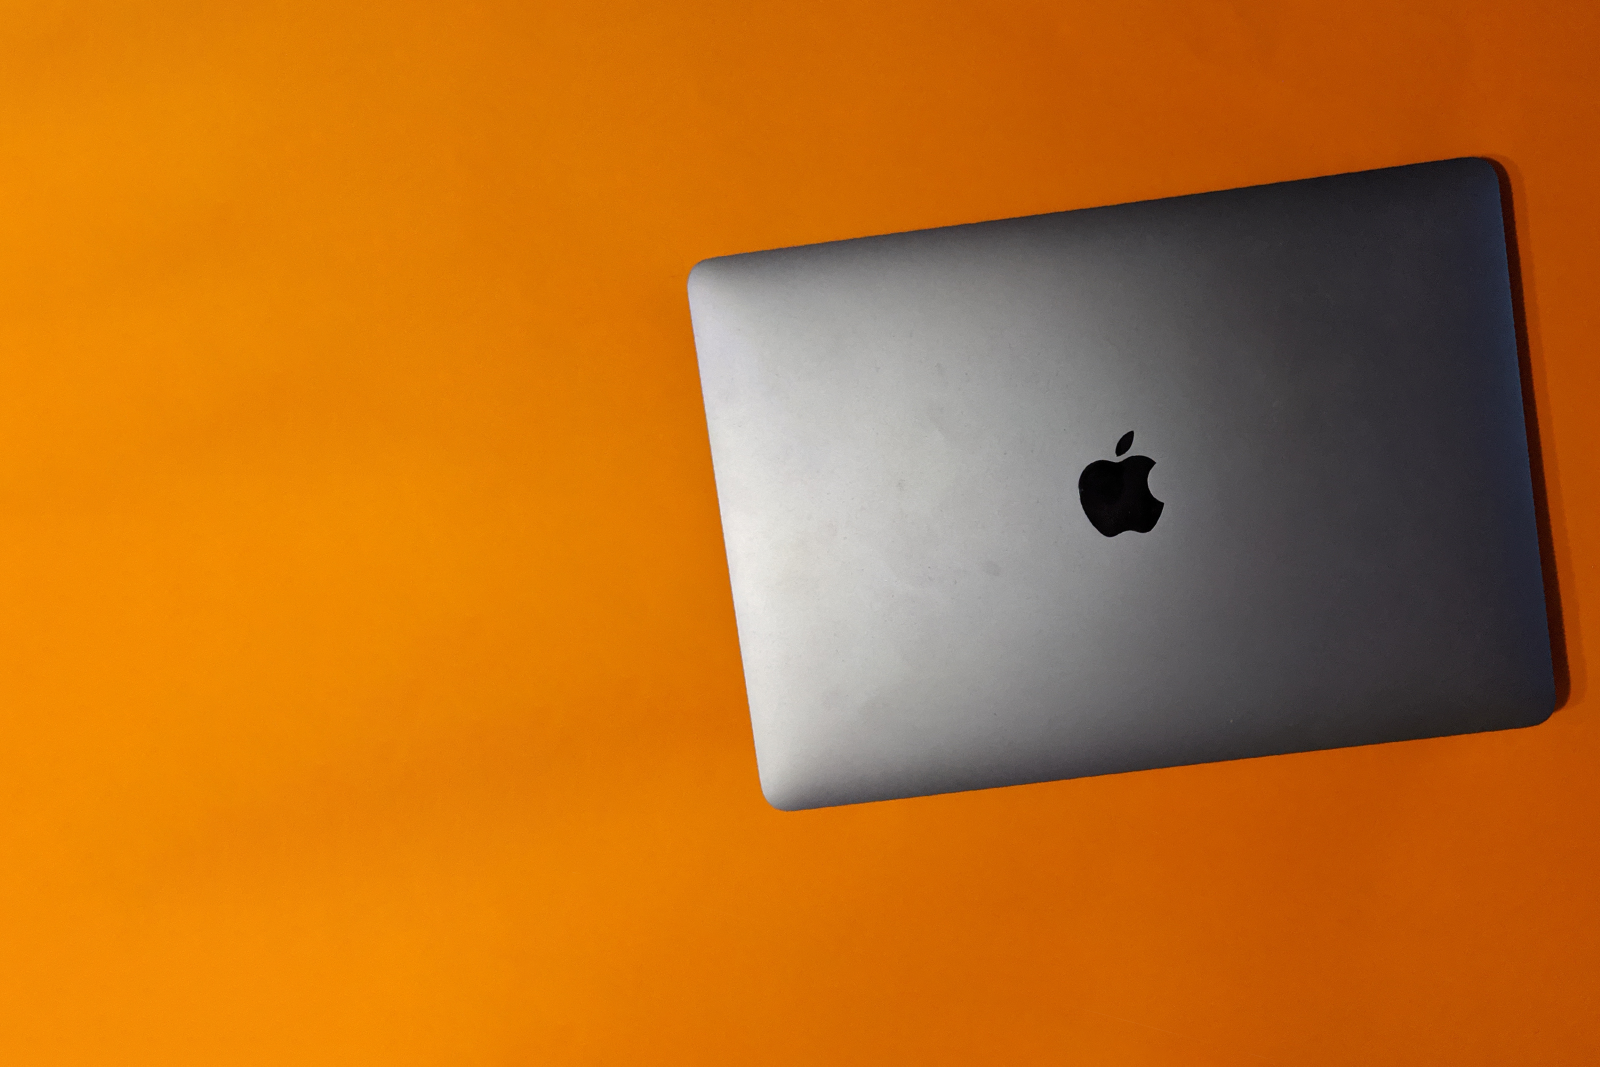 MacBook Air (2020) review